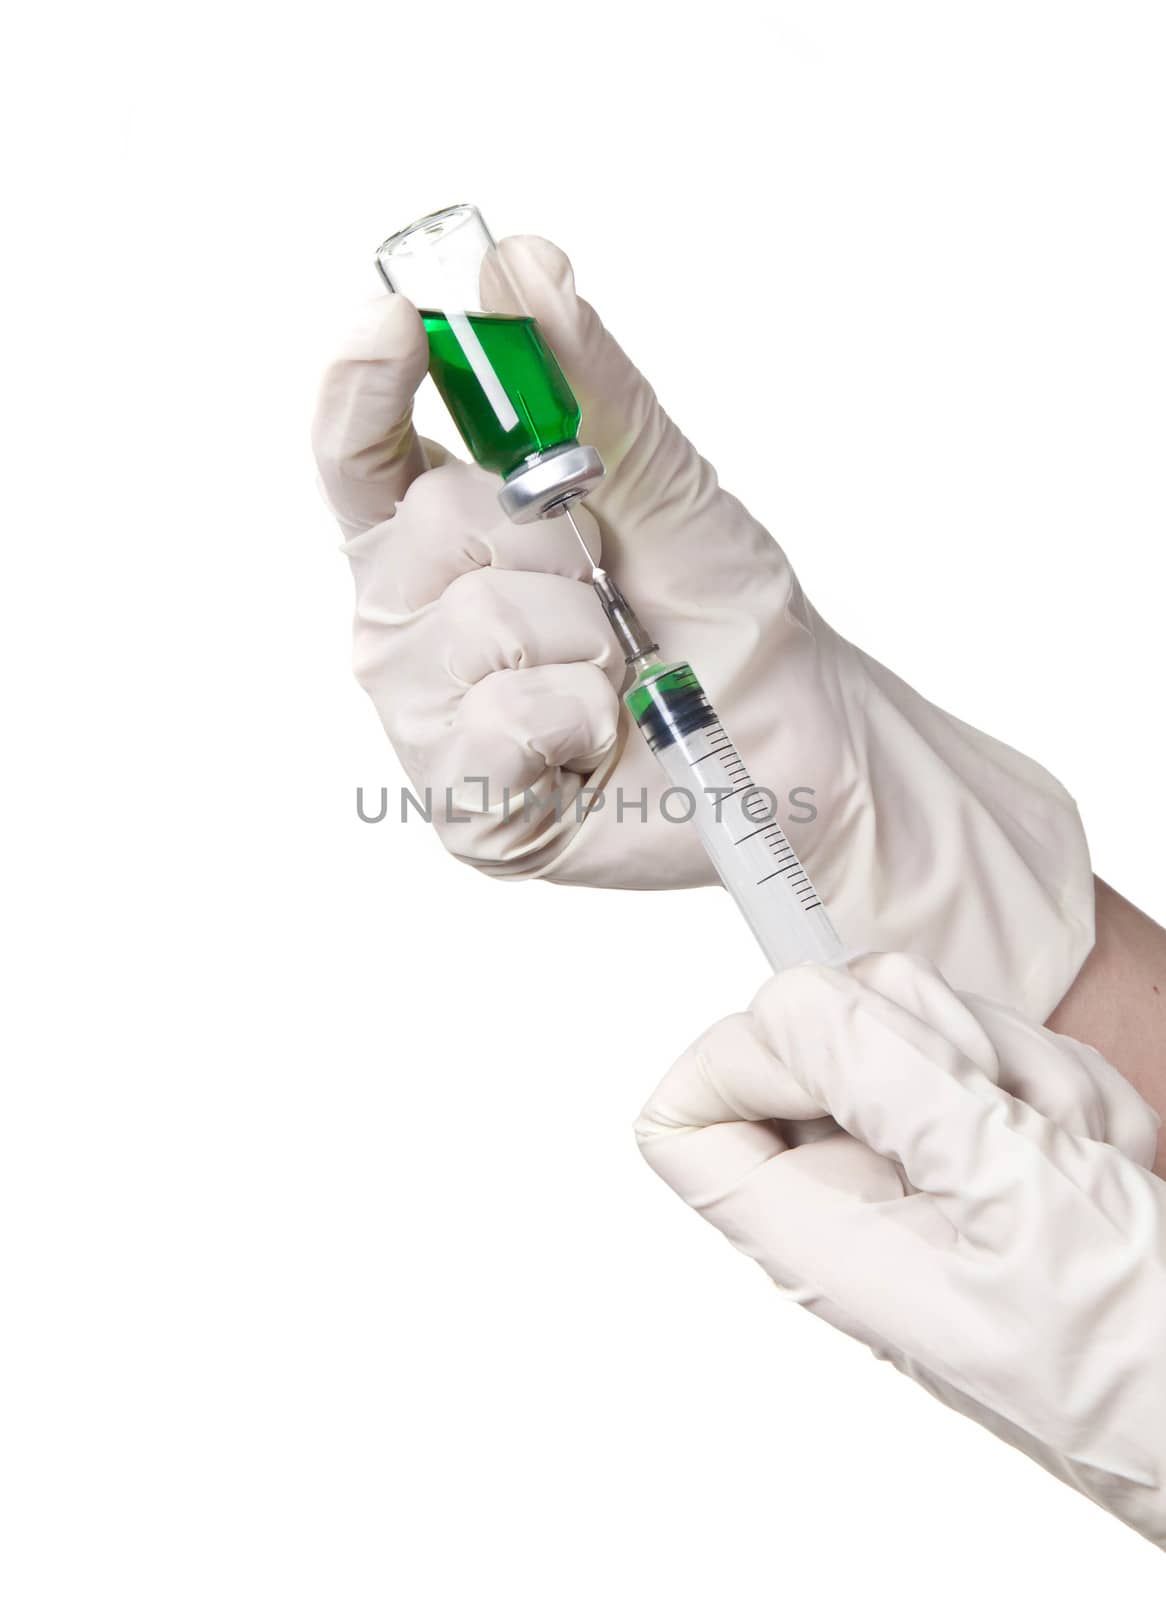 liquid in the syringe